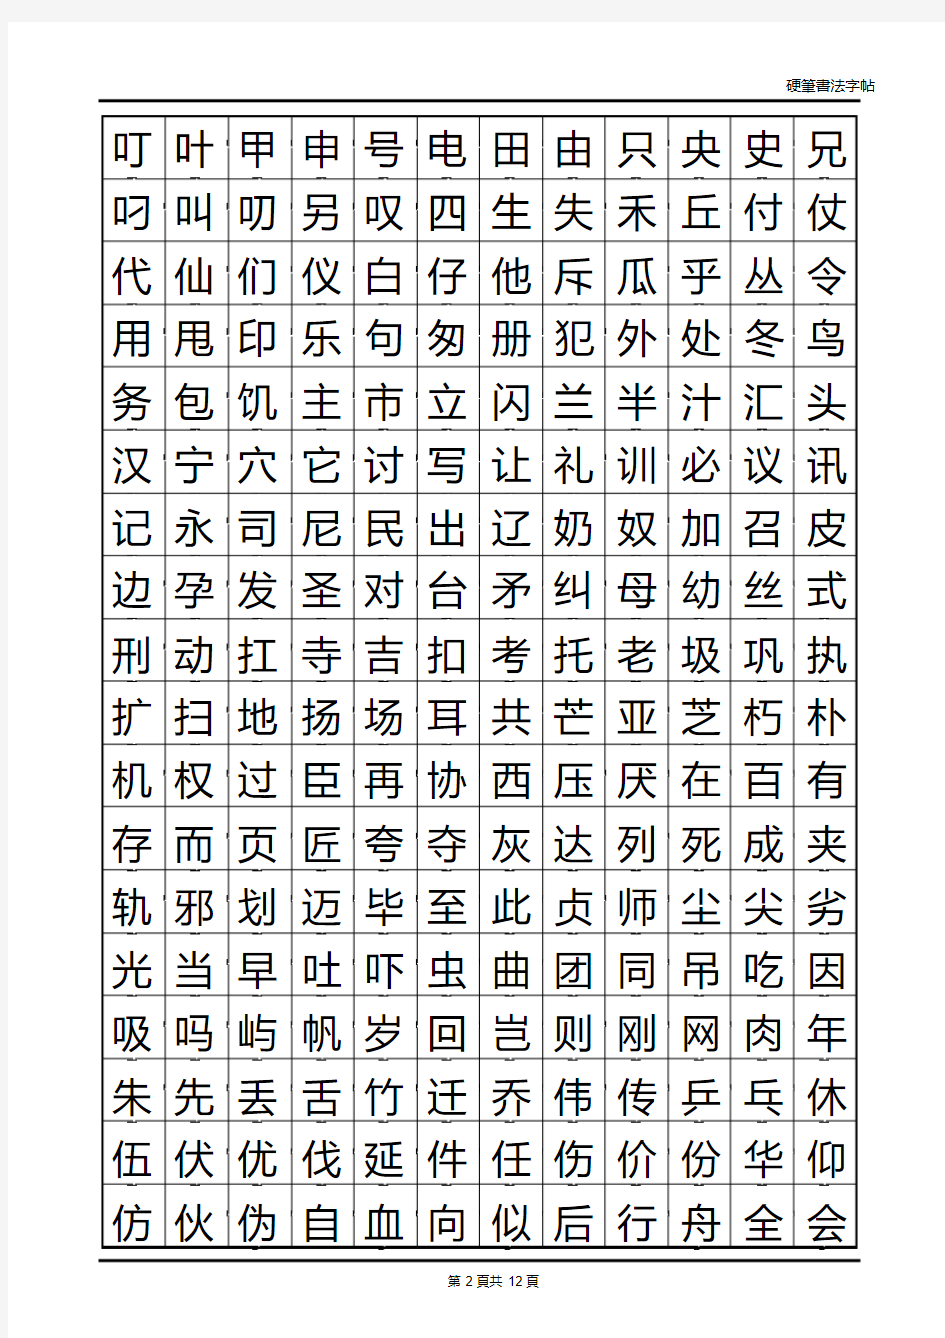 常用汉字2500临摹字帖(自制).